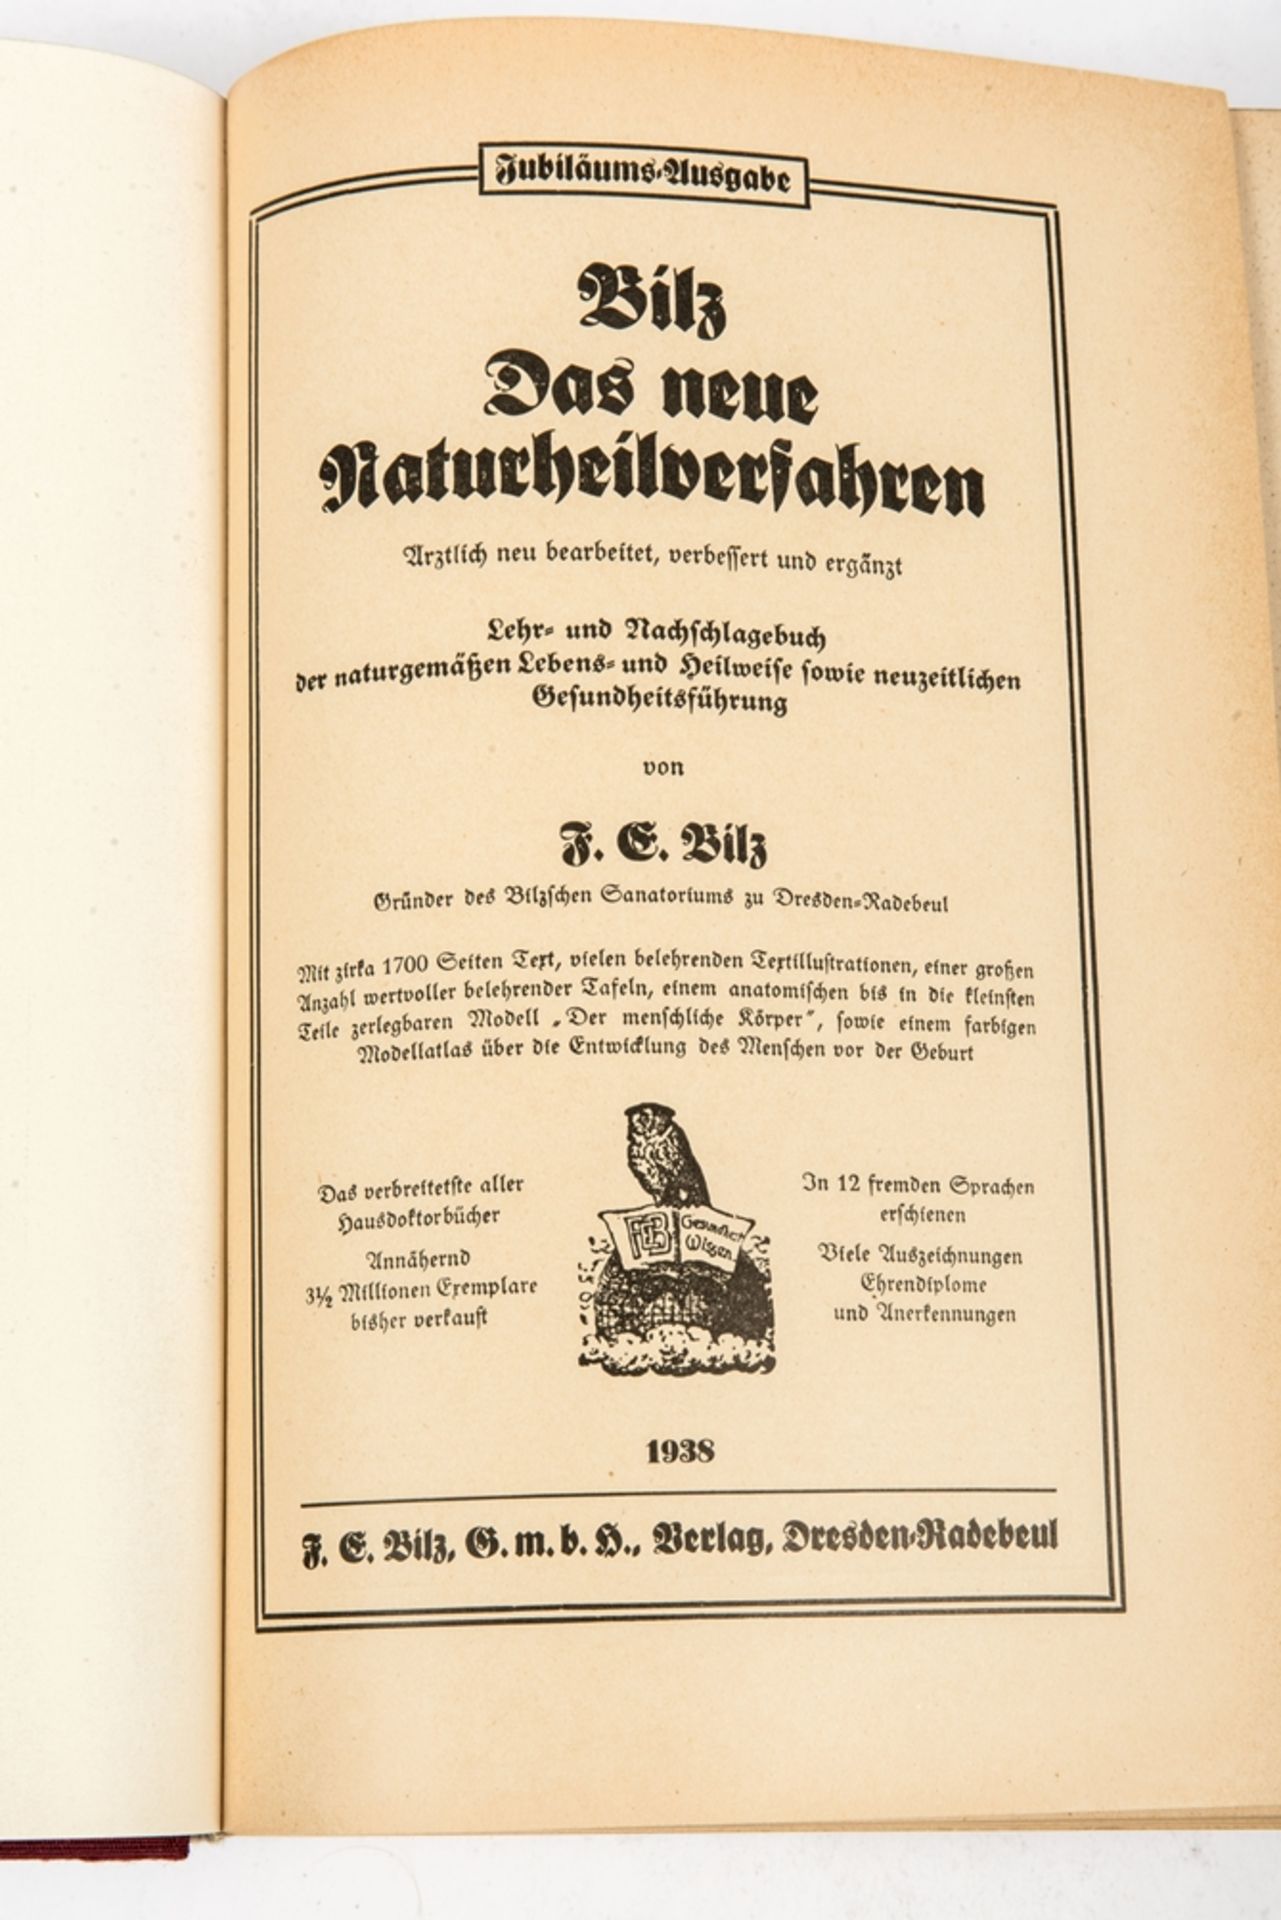 Bilz, Das neue Naturheilverfahren, Jubiläumsausgabe 1938 - Bild 3 aus 5